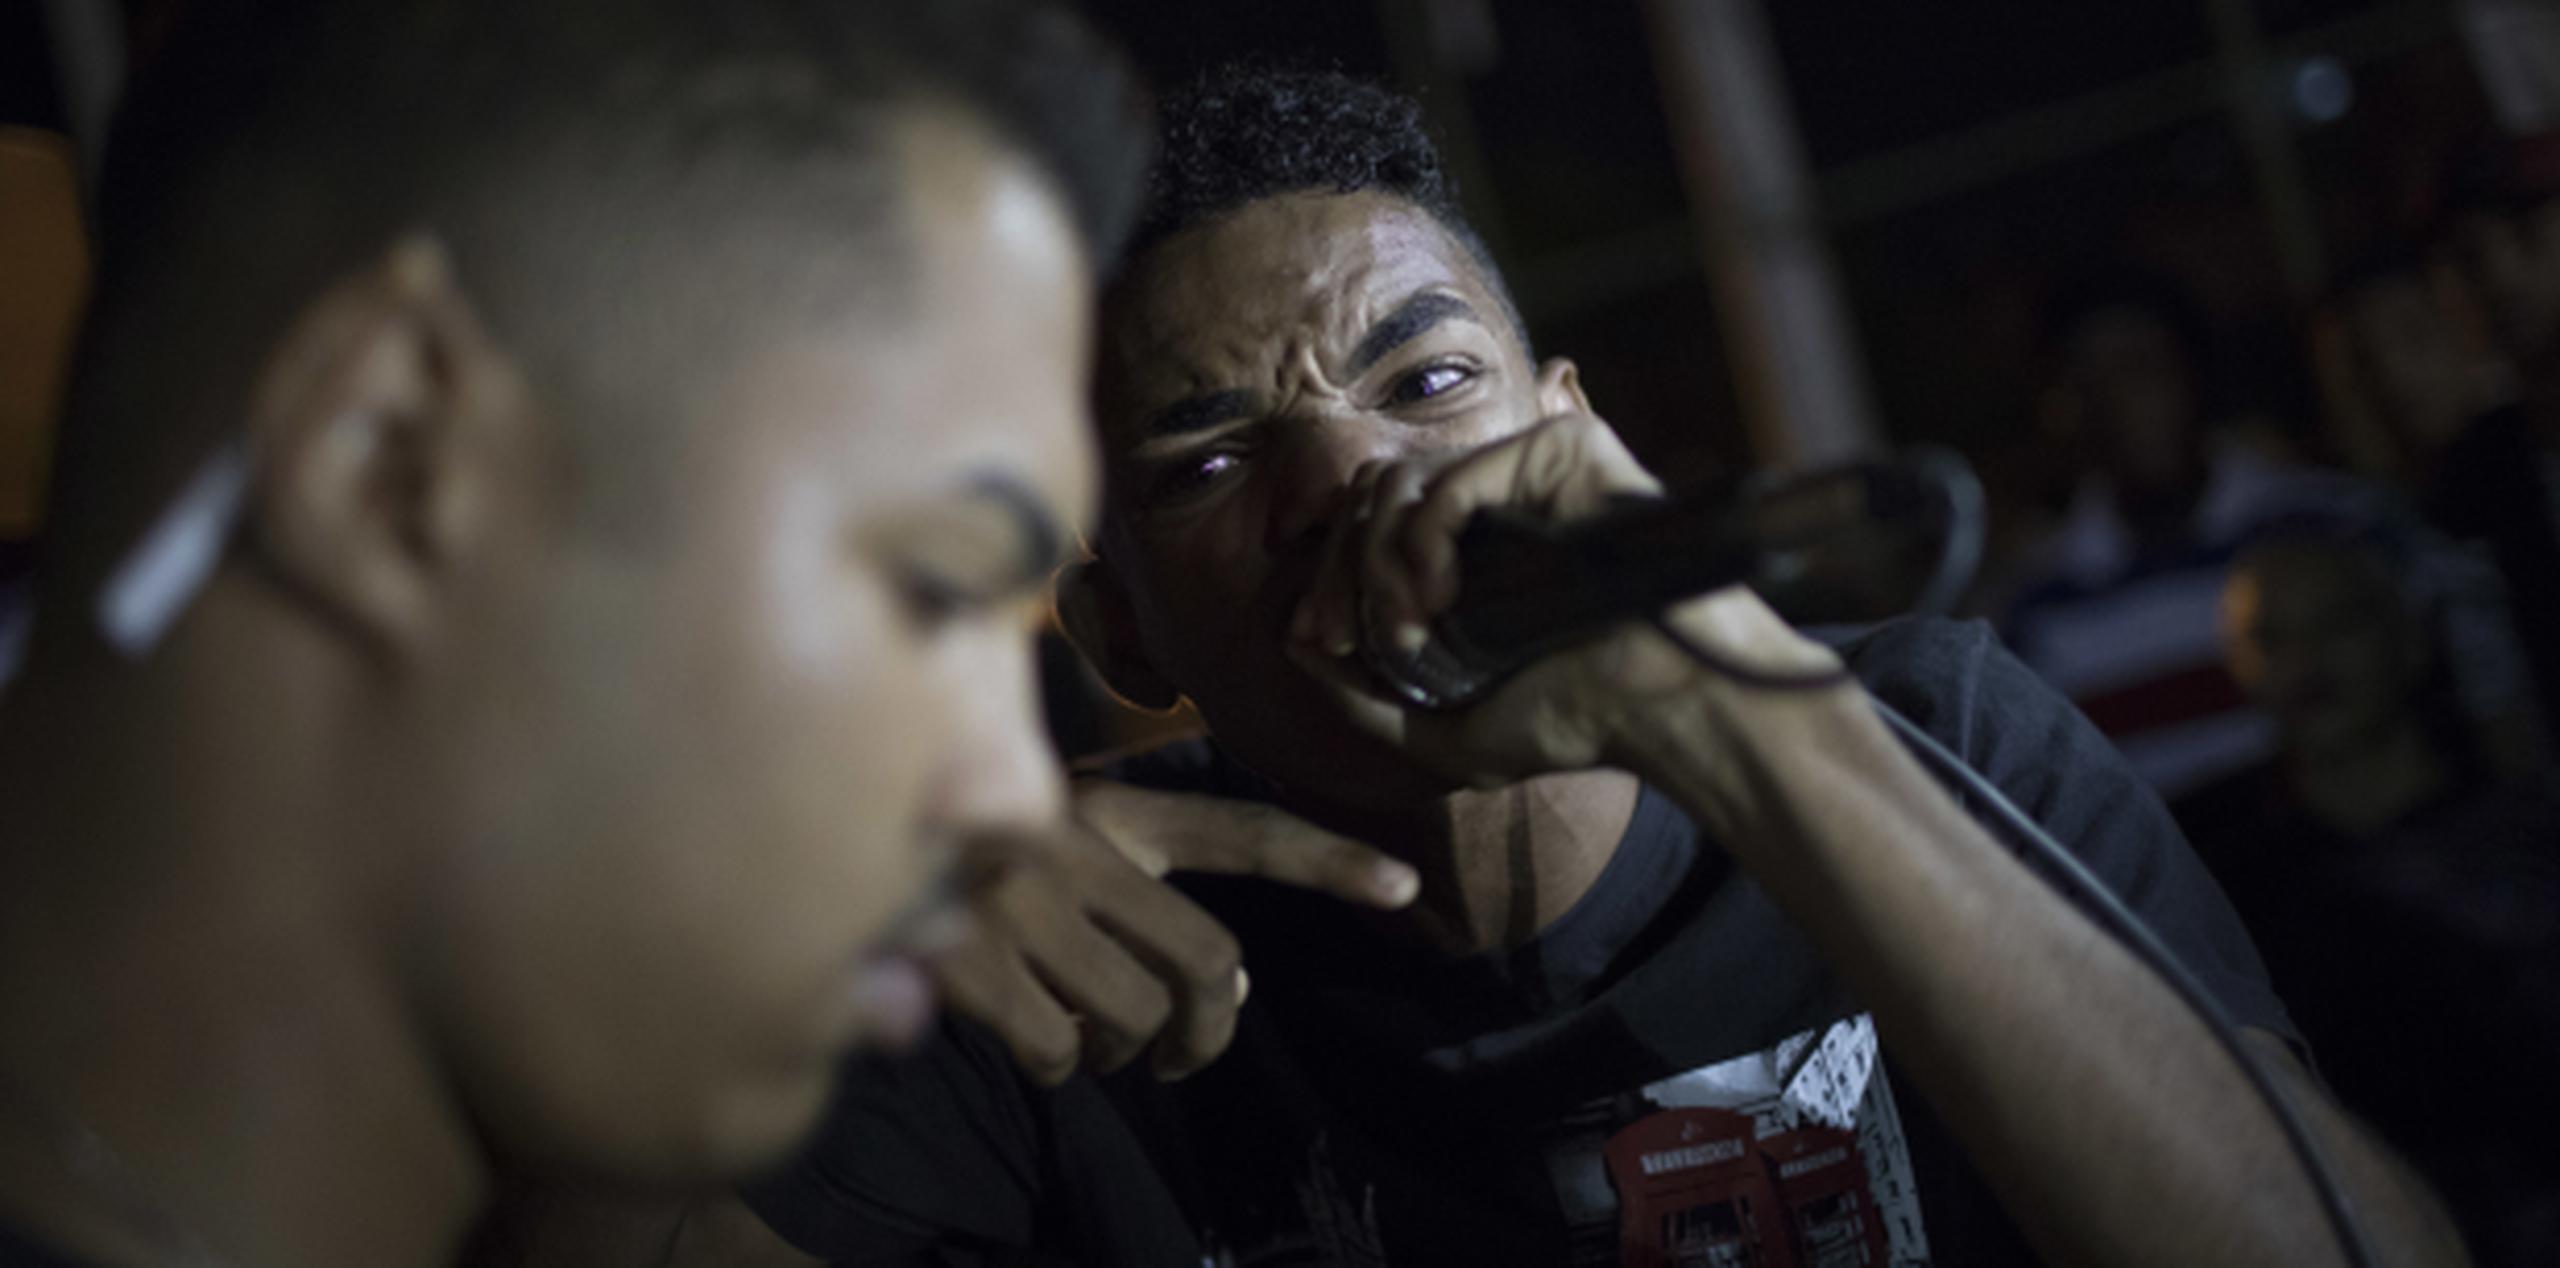 Estos jóvenes participan de una competencia de rap en la favela Ciudad de Dios. (AP)